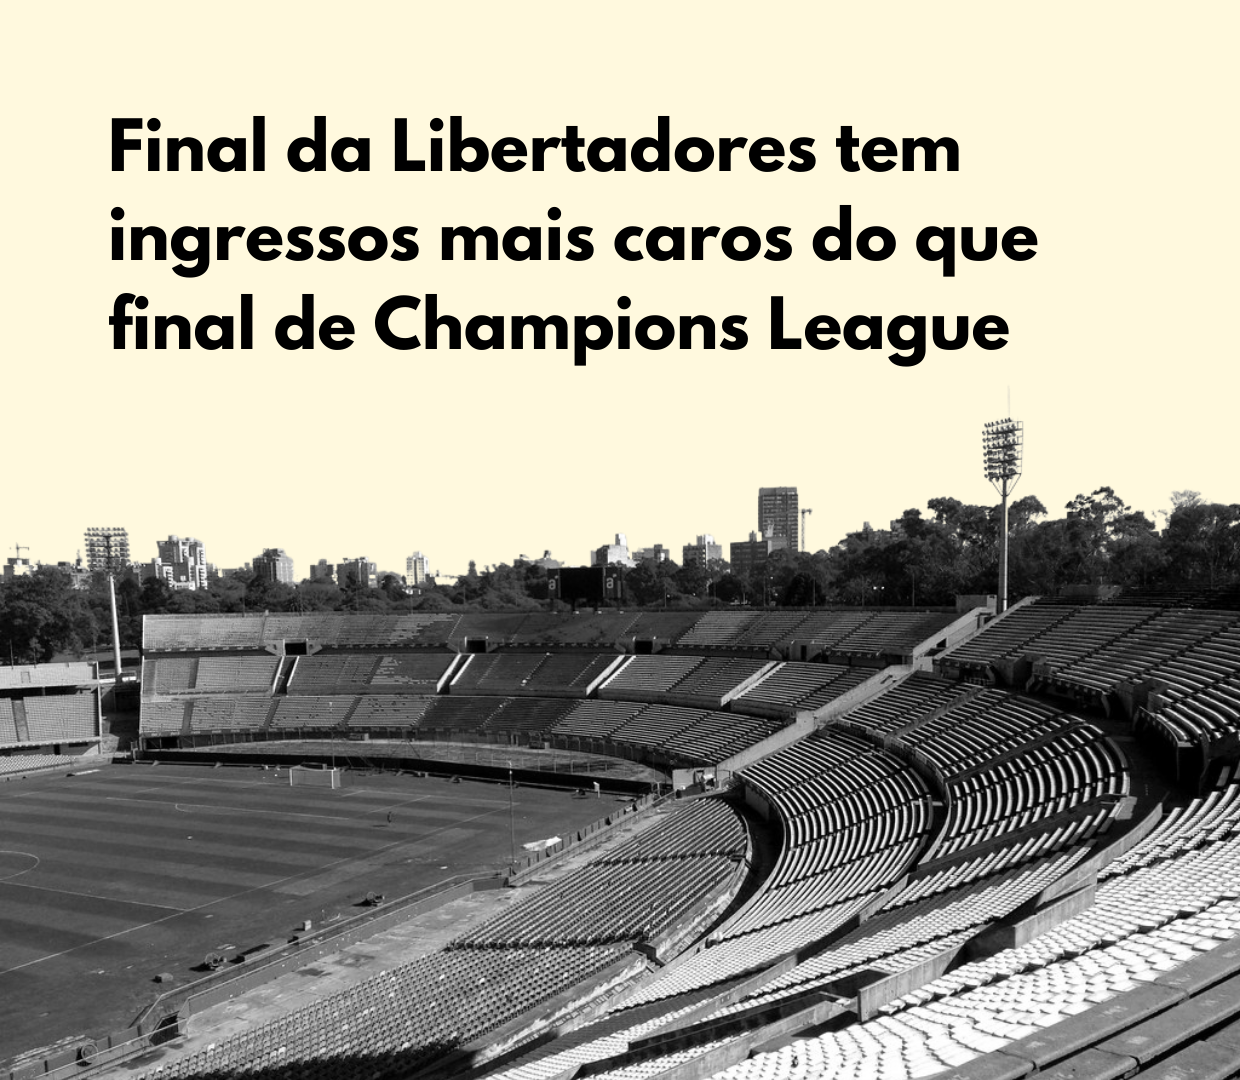 Final da Libertadores tem ingressos mais caros do que final de Champions League